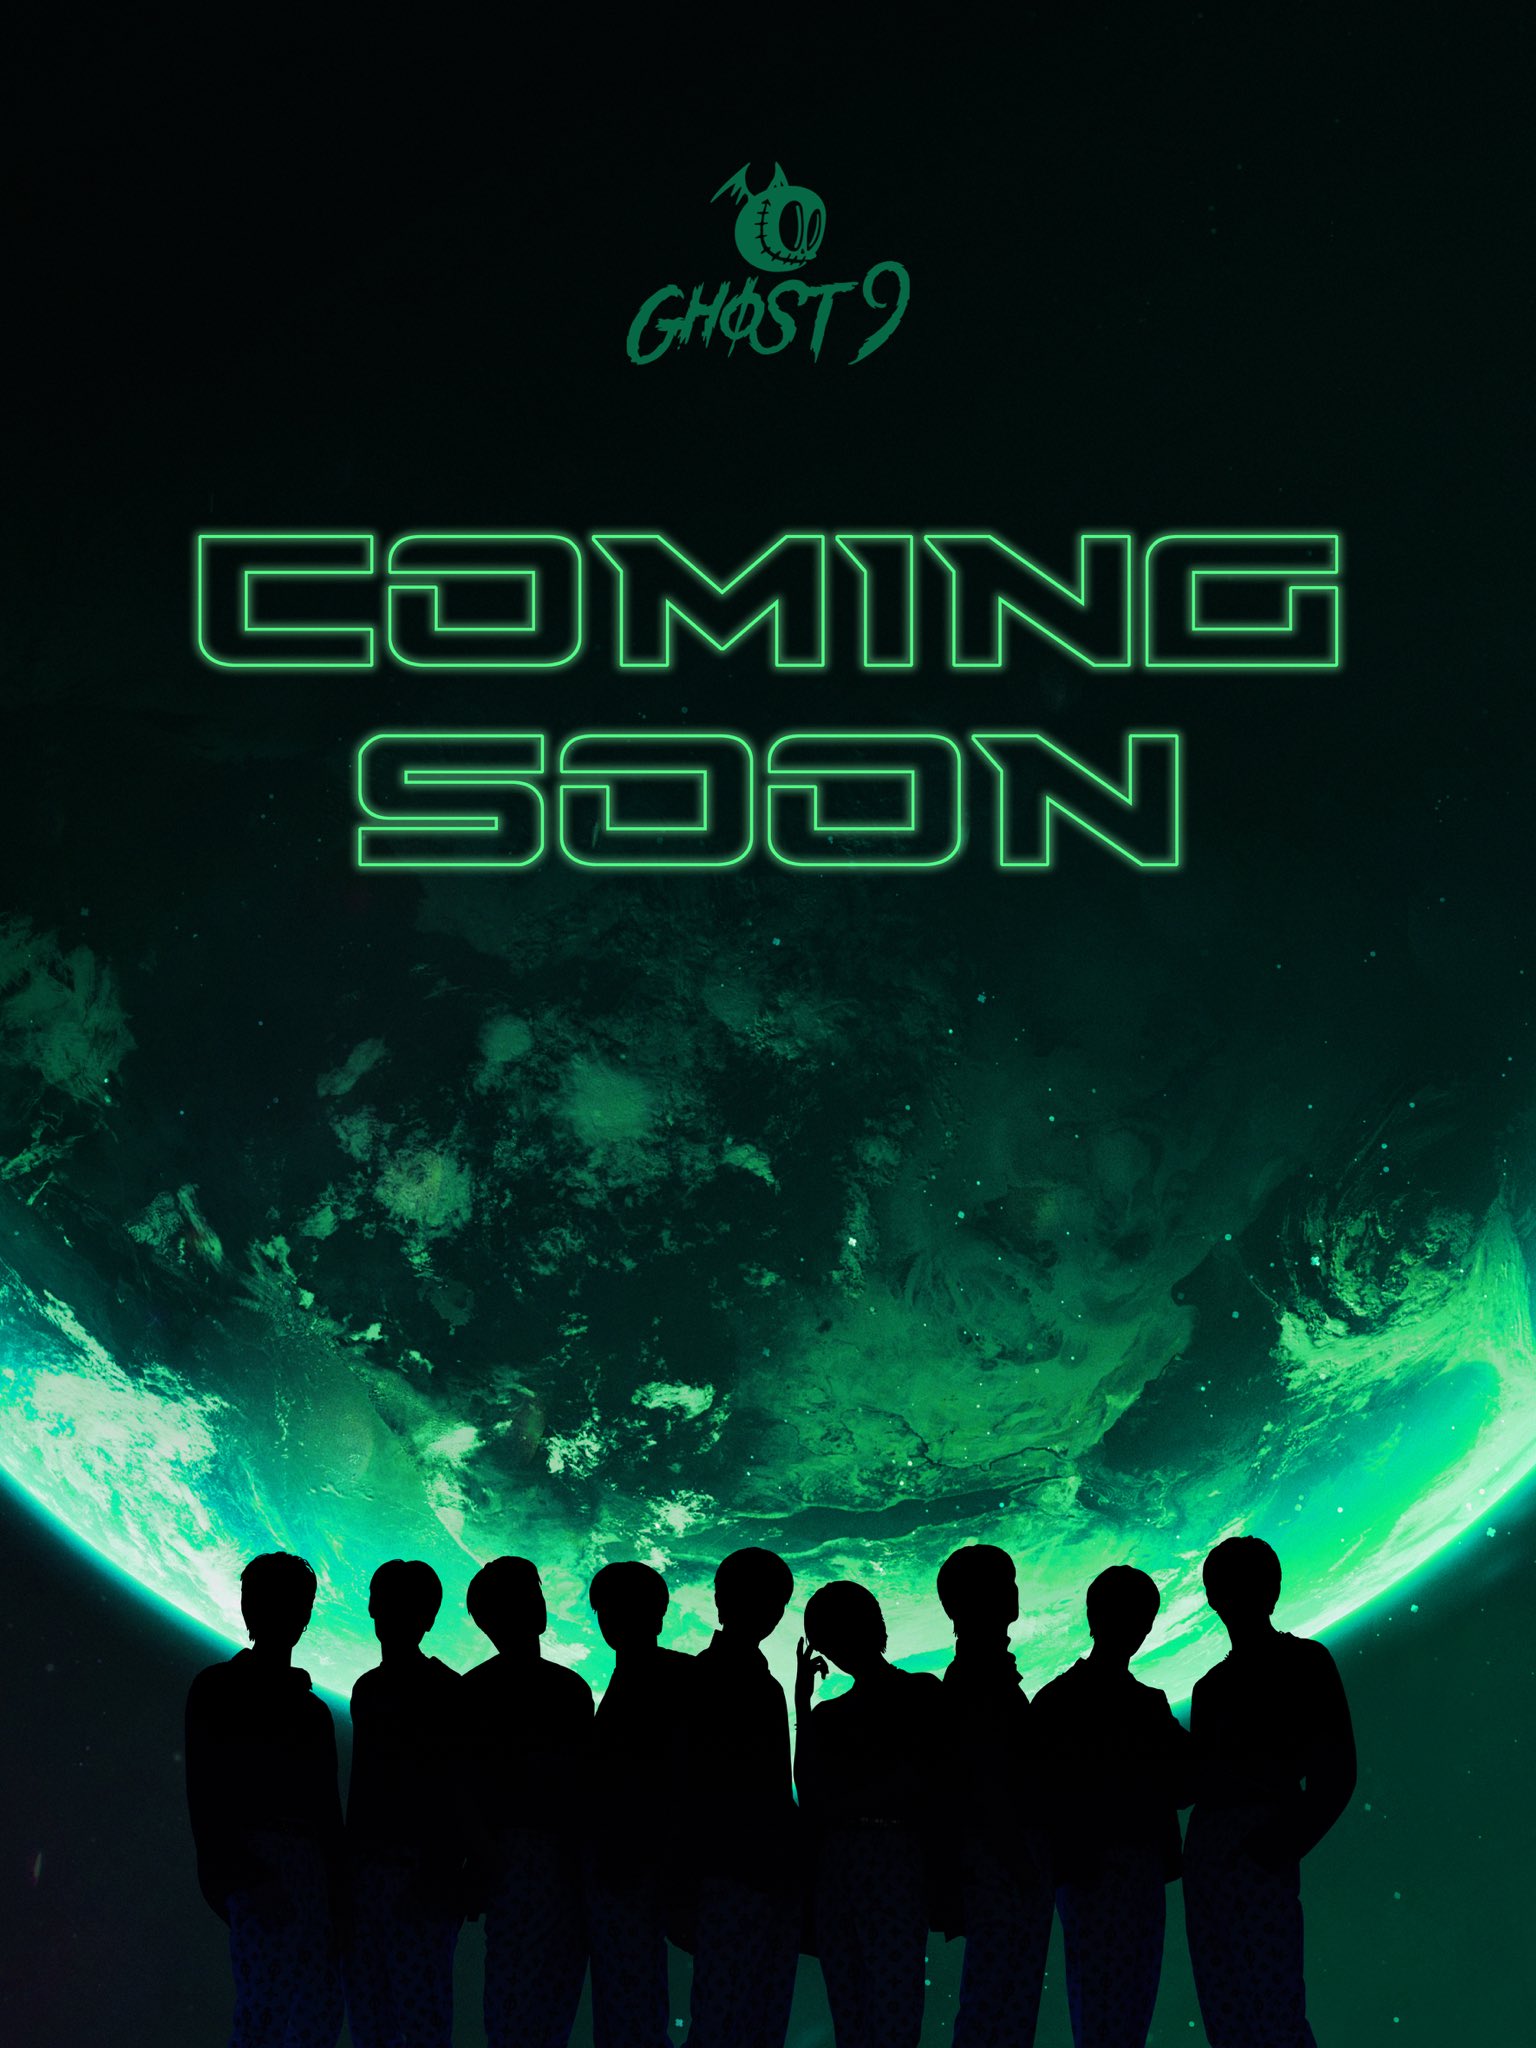 ghost9-announces-debut-schedule-with-first-album-pre-episode-1-door-2